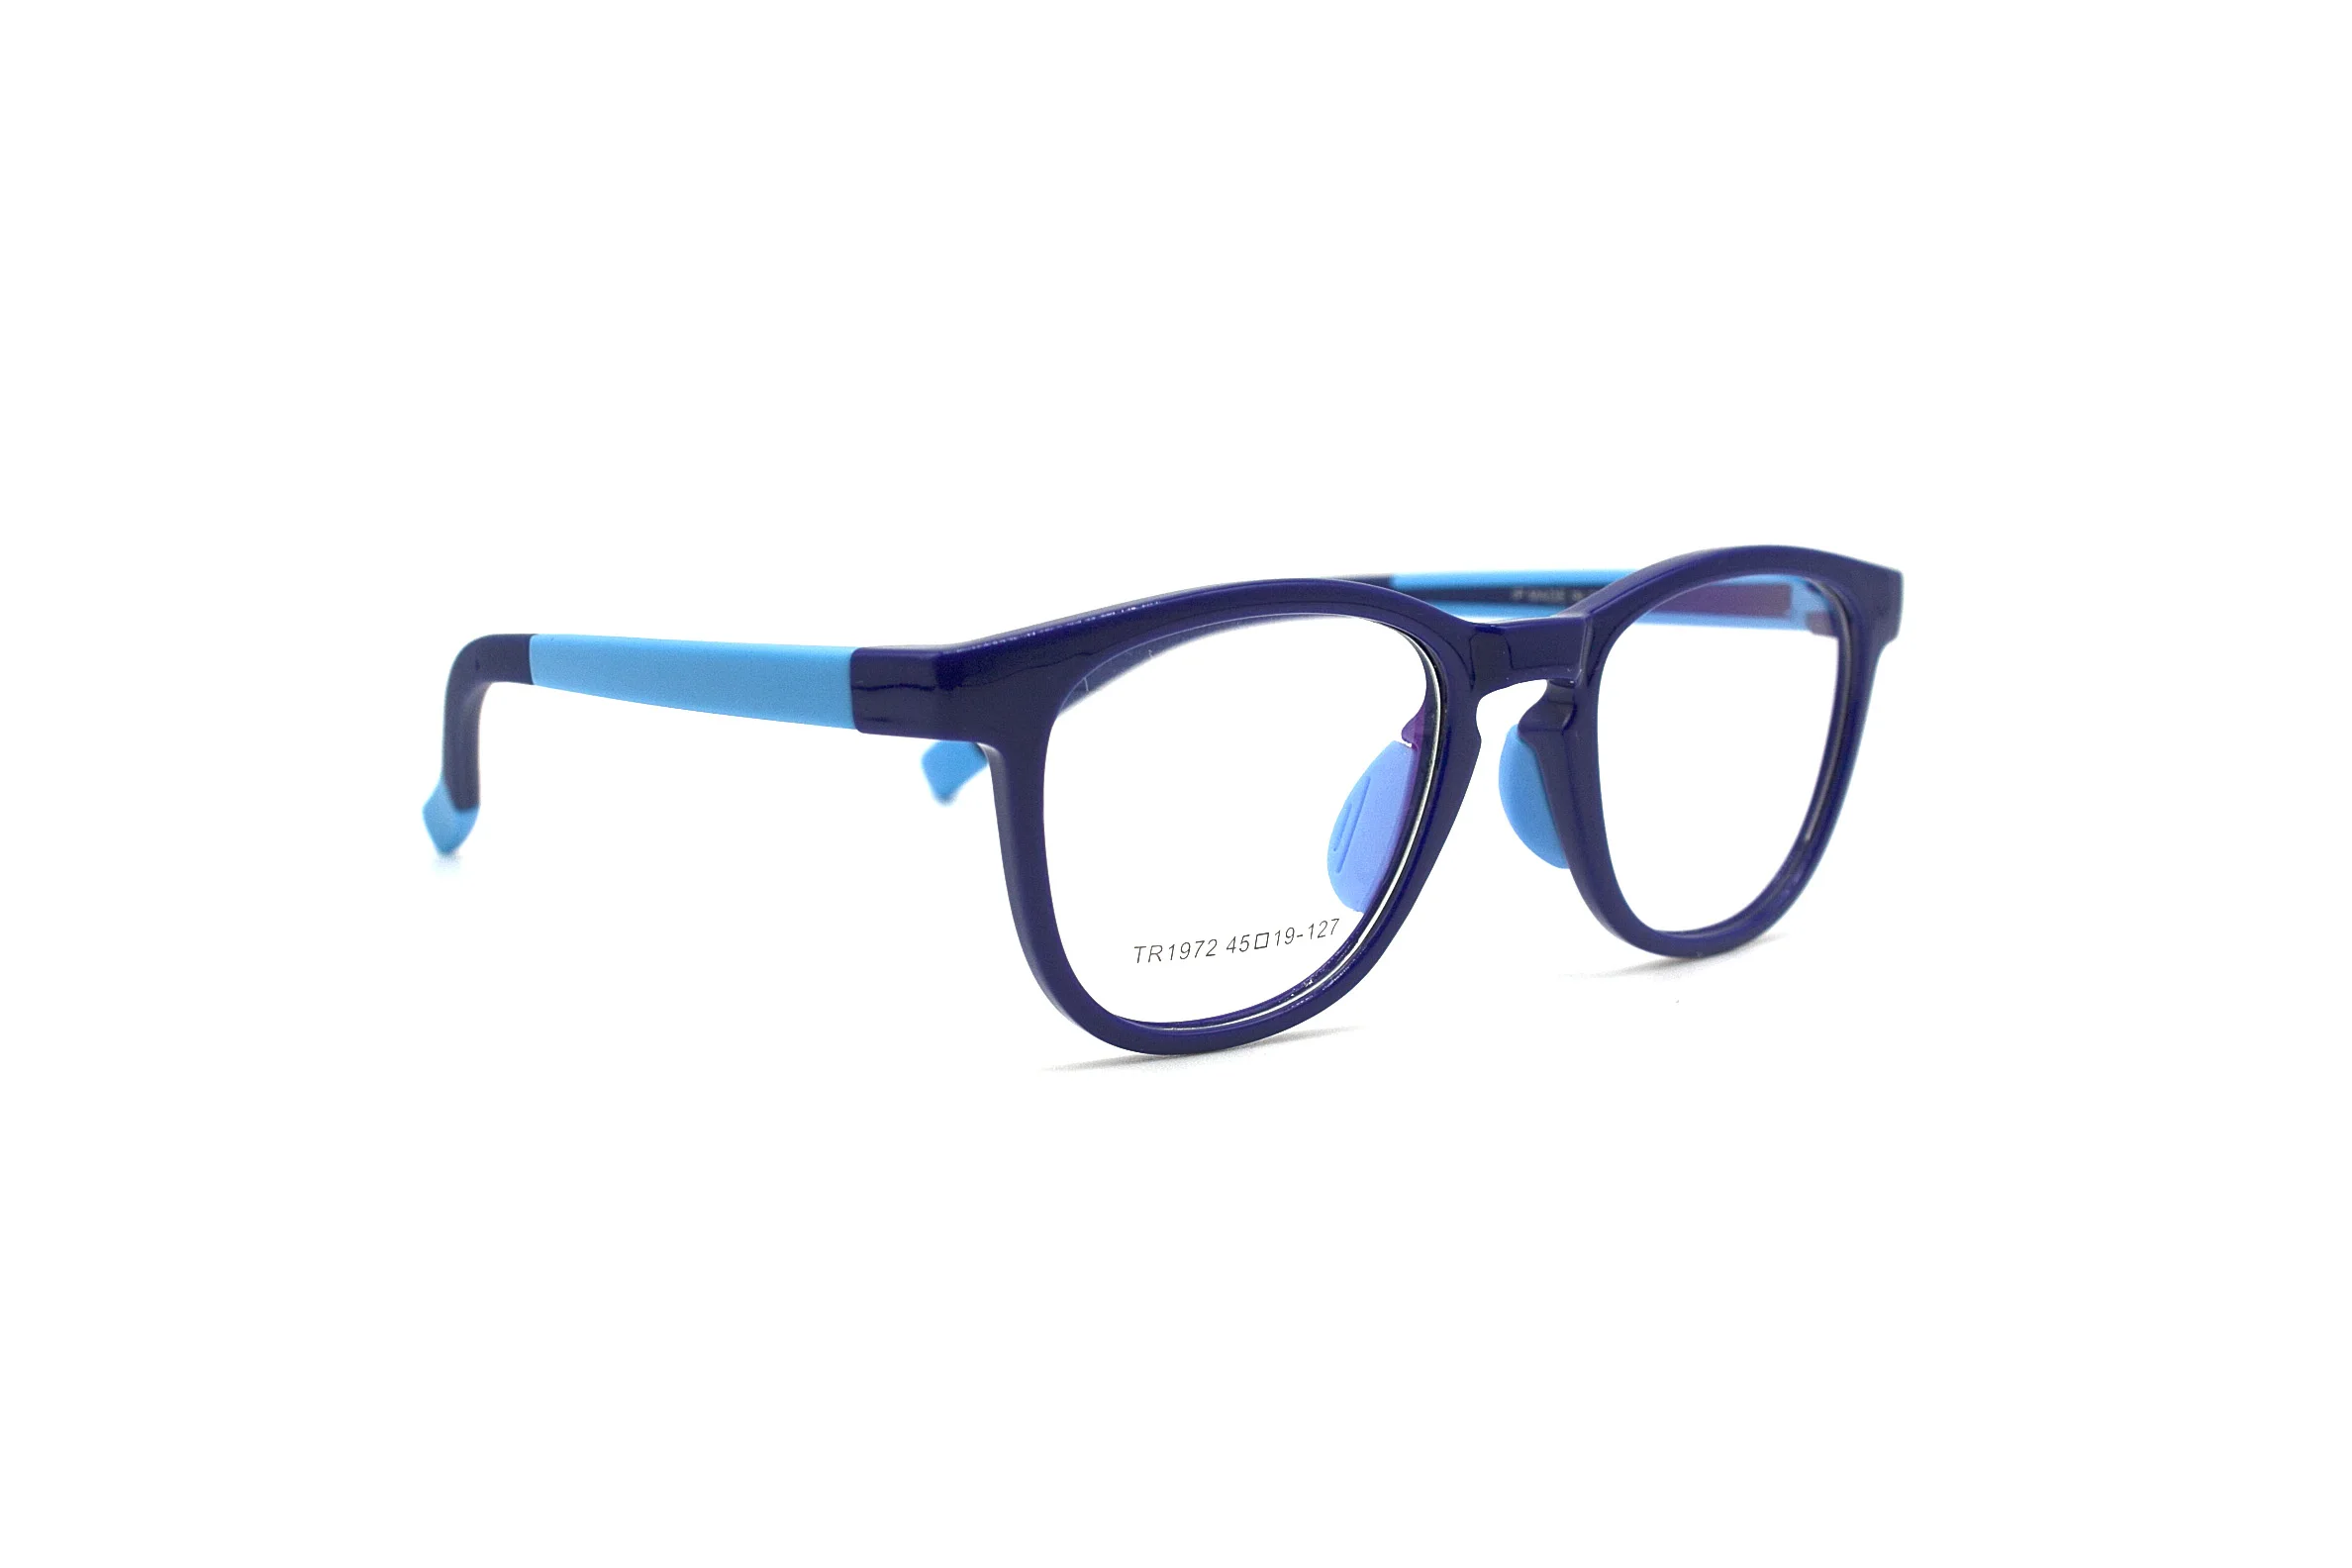 LuckTime милые детские очки оправа Мягкая TR90 рецептурная оптическая оправа детские оправы для очков счастливое время близорукость очки оправа#1972 - Цвет оправы: Dark Blue